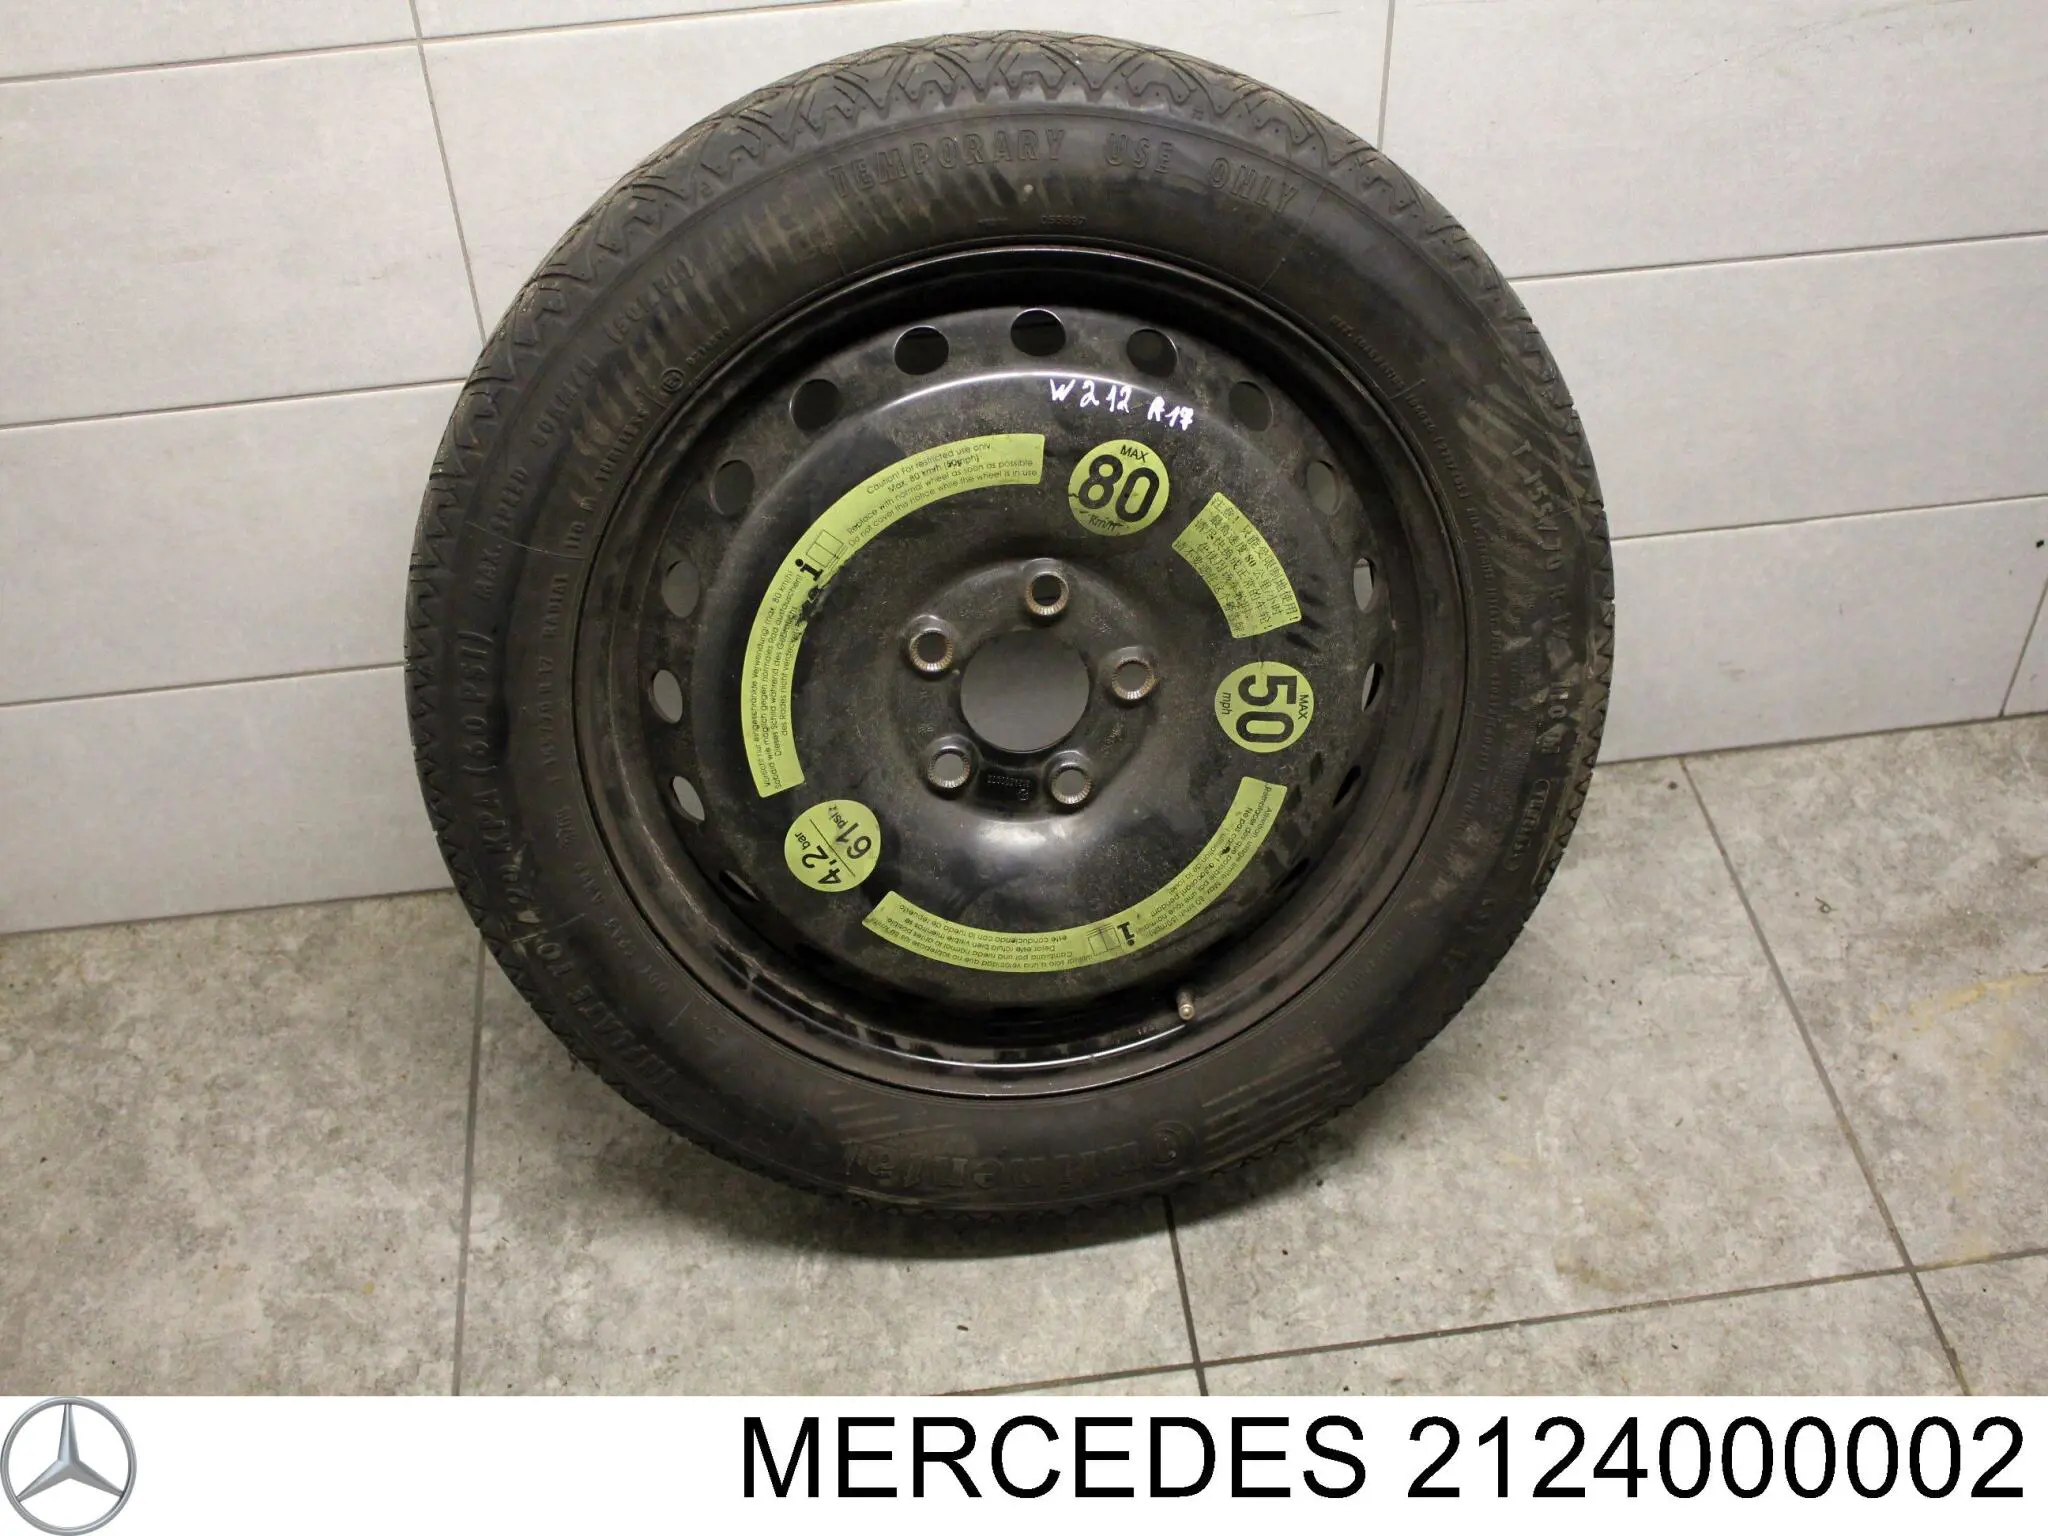 A2124000002 Mercedes докатка (аварийное запасное колесо)